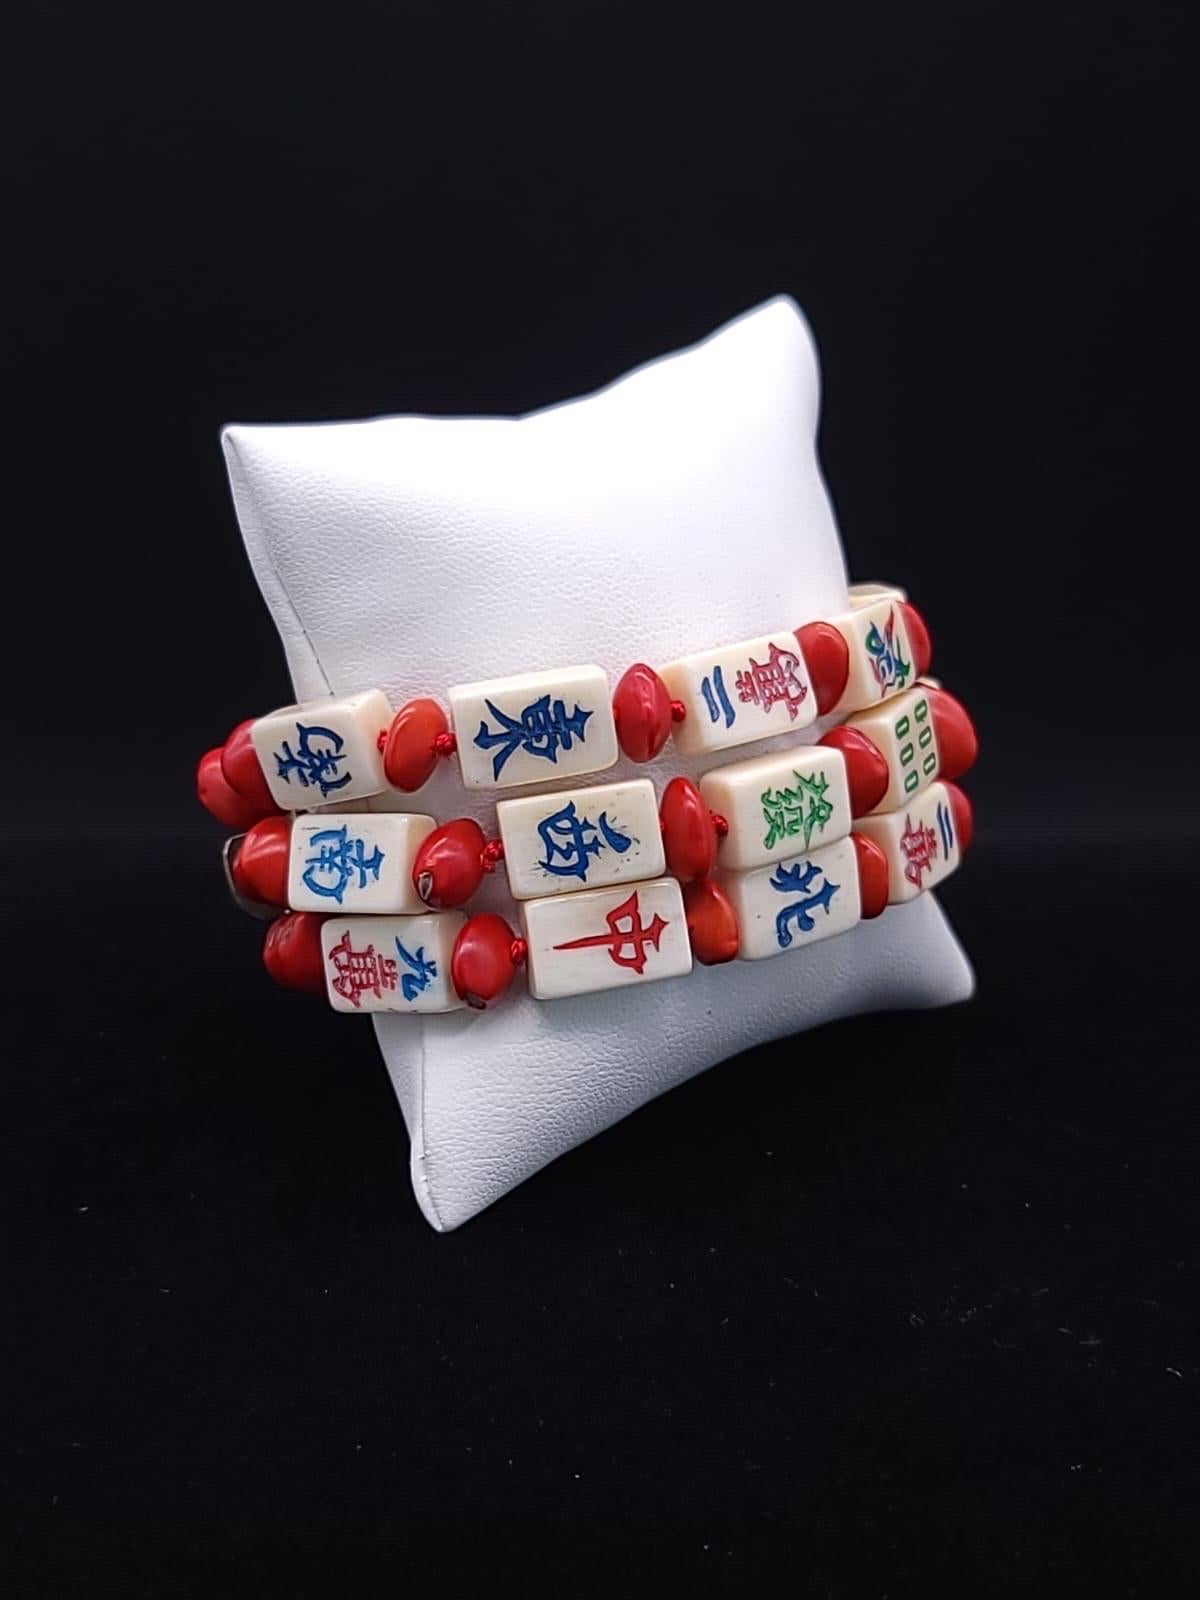 A.Jeschel Stunning mahjong tiles bracelet. 5